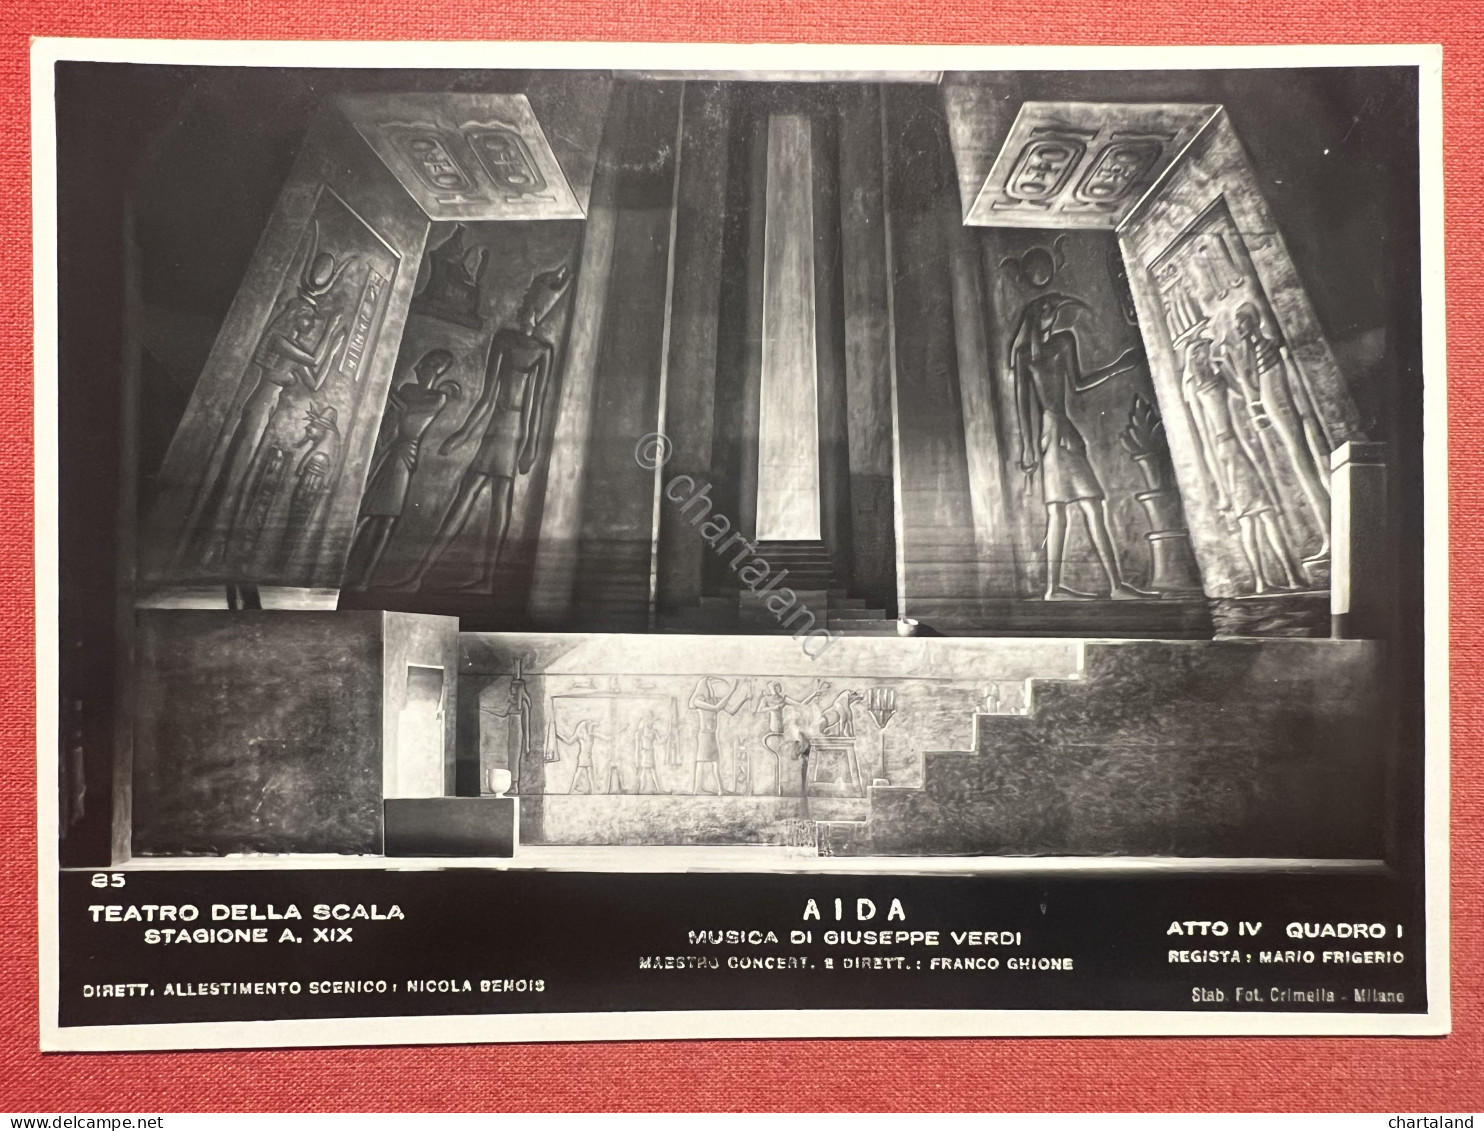 Cartolina - Teatro Della Scala - Aida Di G. Verdi - Atto Iv Quadro - 1955 Ca. - Milano (Milan)